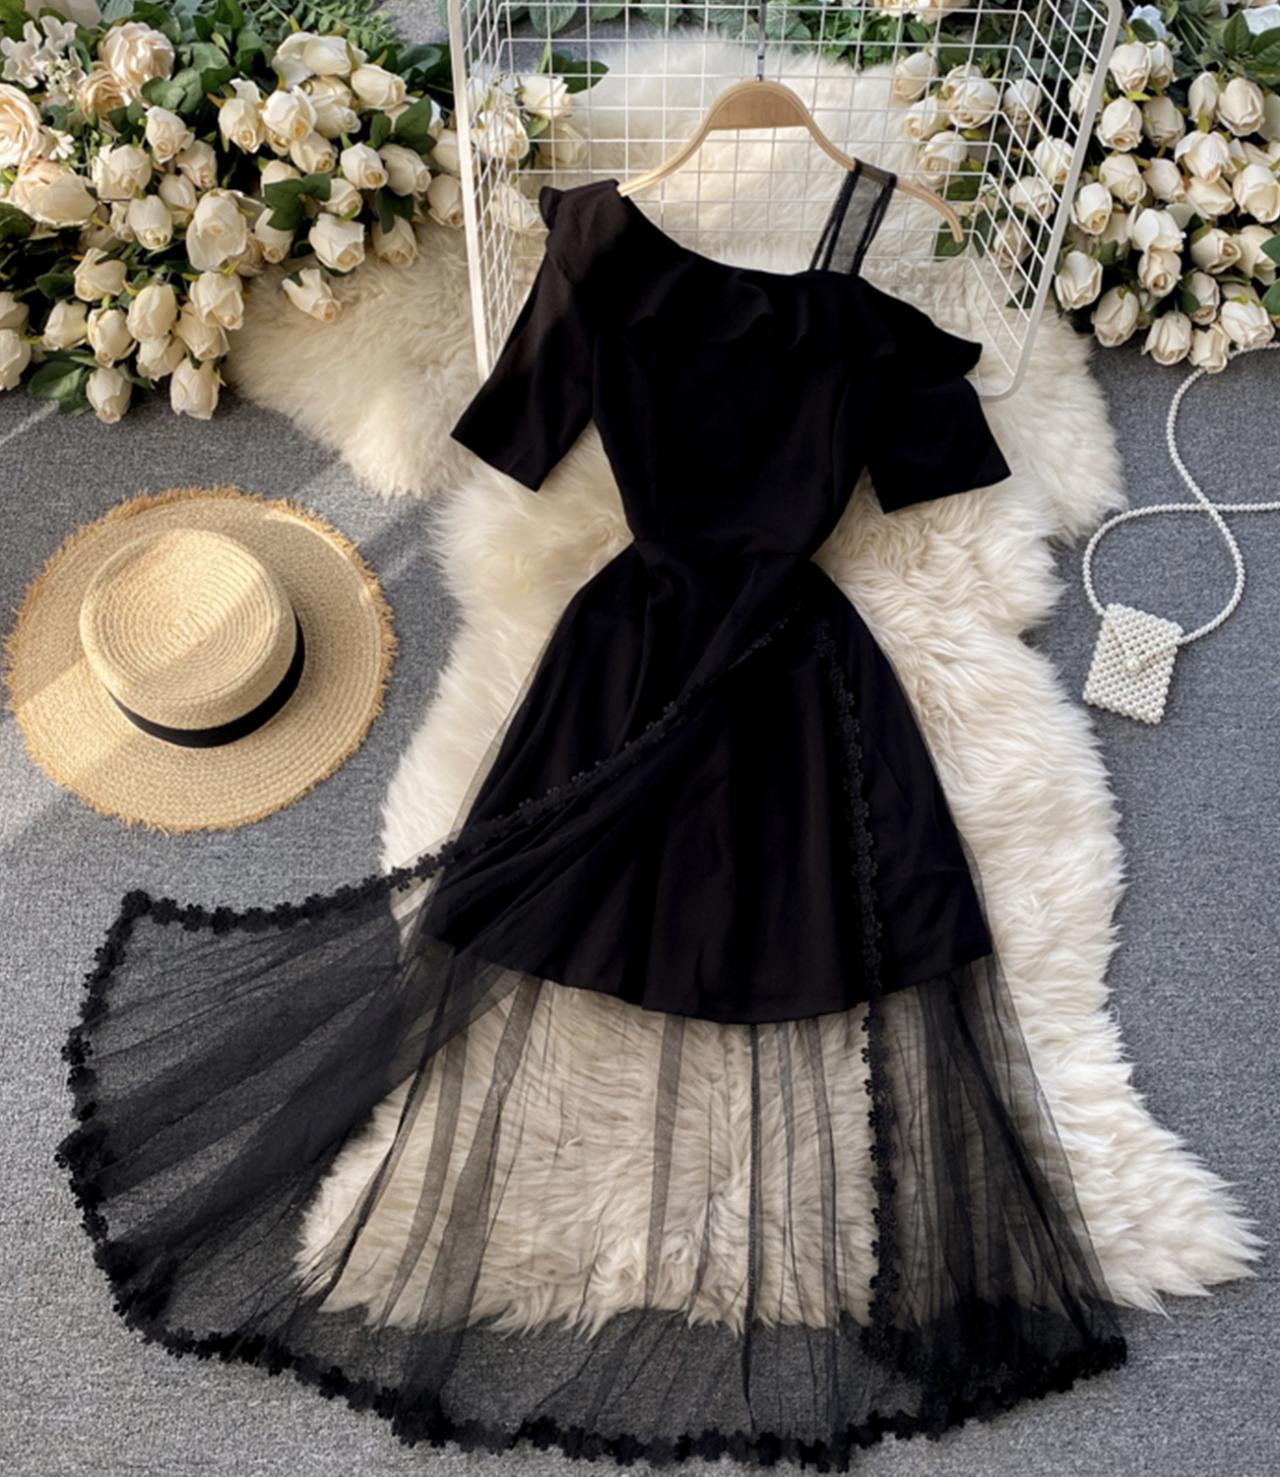 Black One Shoulder Dress Black Lace Dress